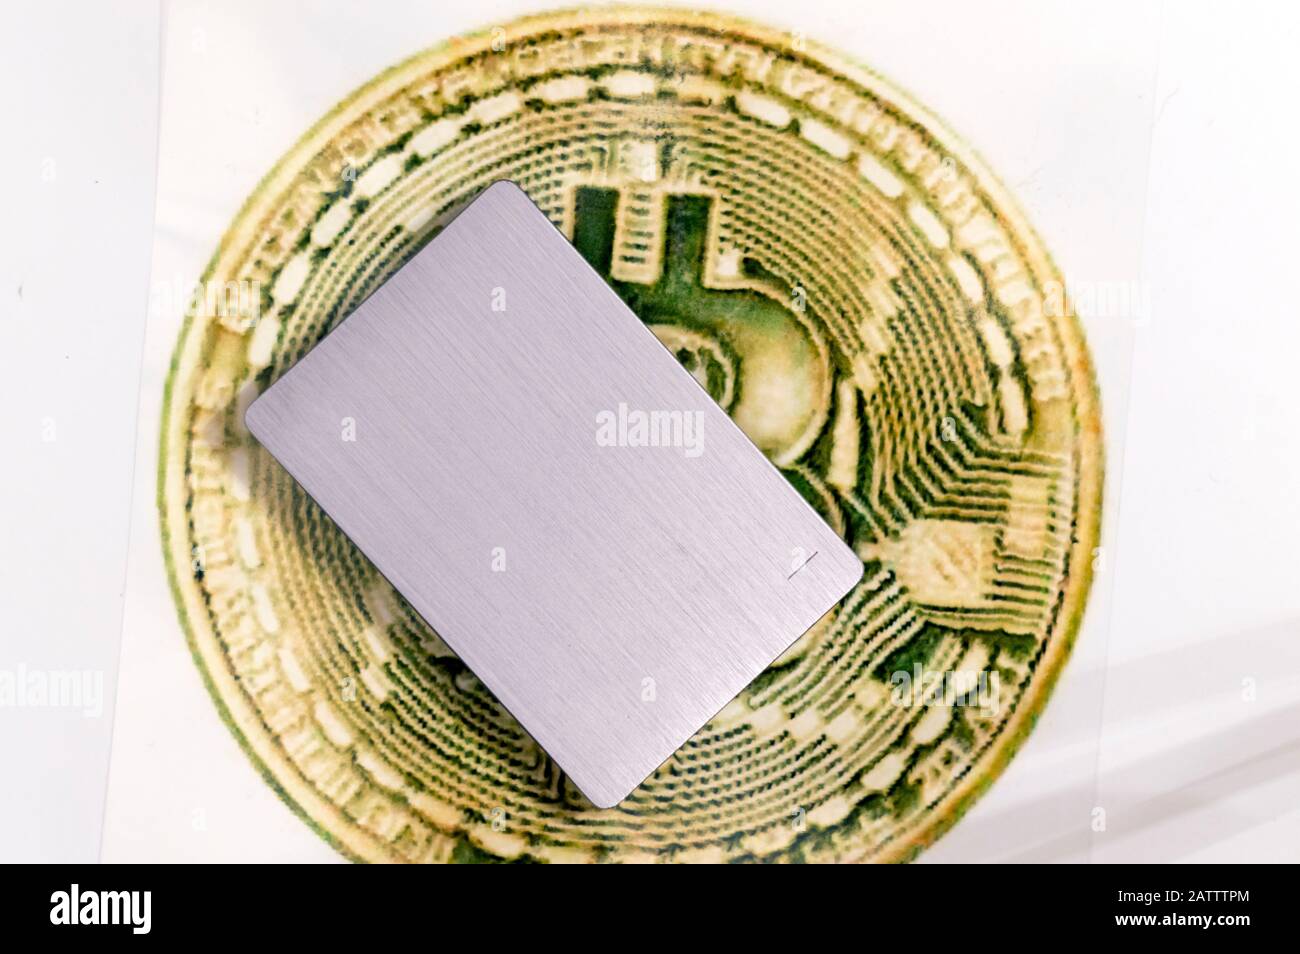 Il segno di criptovaluta Bitcoin e un dispositivo di memorizzazione dati esterno si trovano sulla stessa superficie. La composizione enfatizza il denaro dato. Russia. Foto Stock